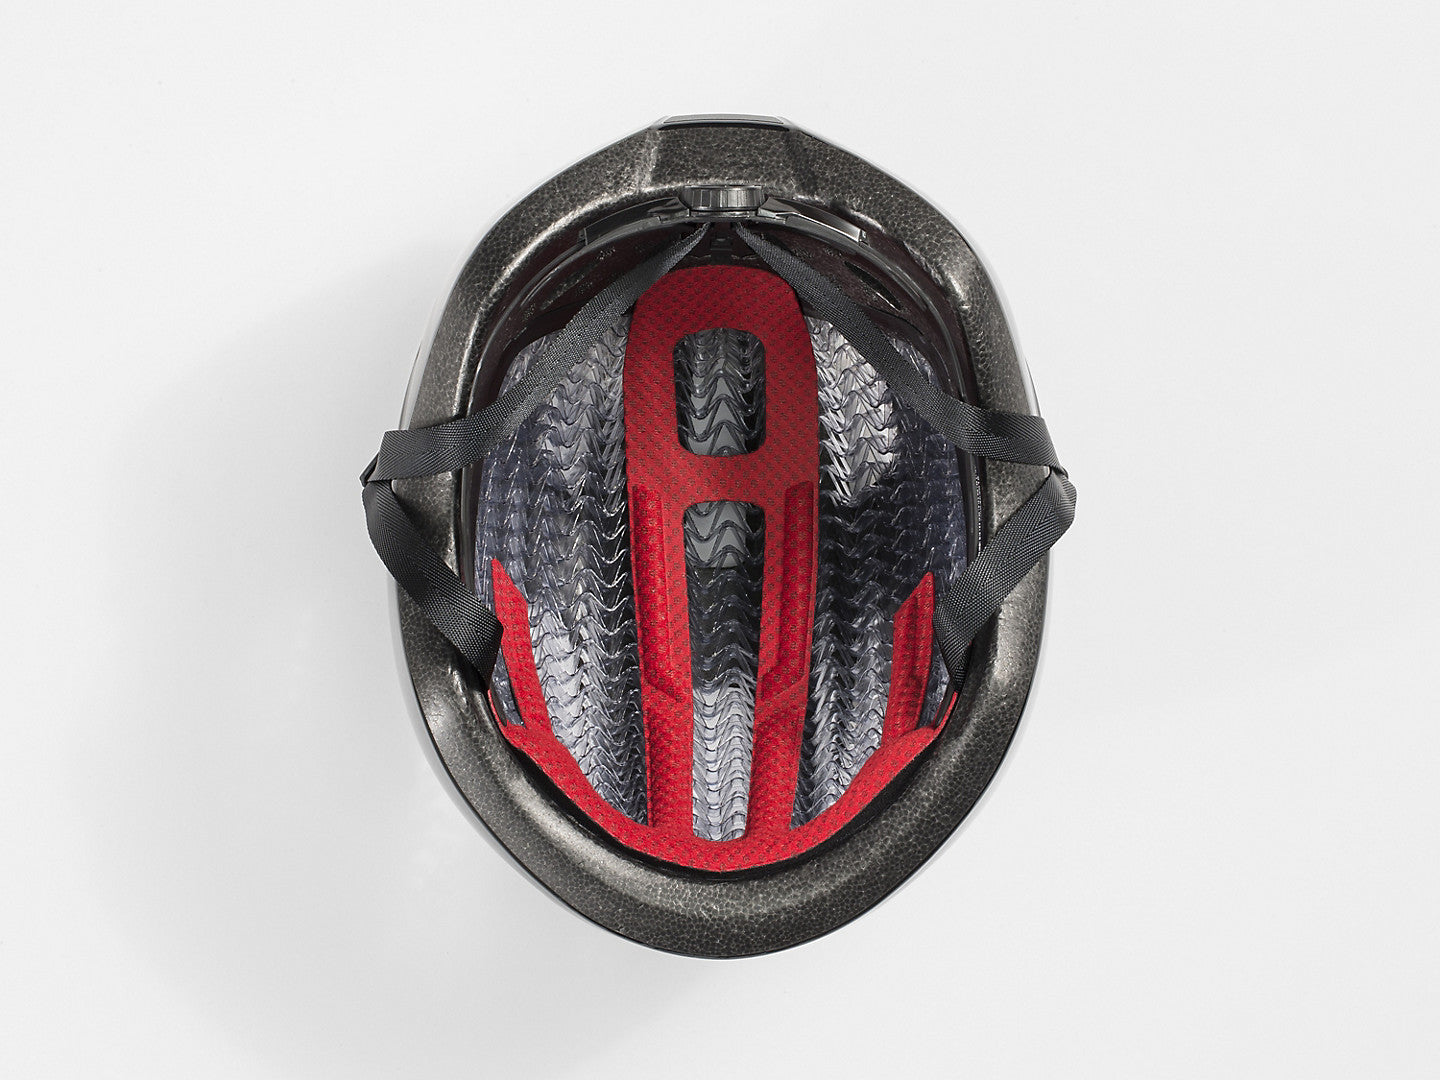 SALE: Bontrager Starvos WaveCel Road Helmet- Bike Helmets- Wavecel Technology